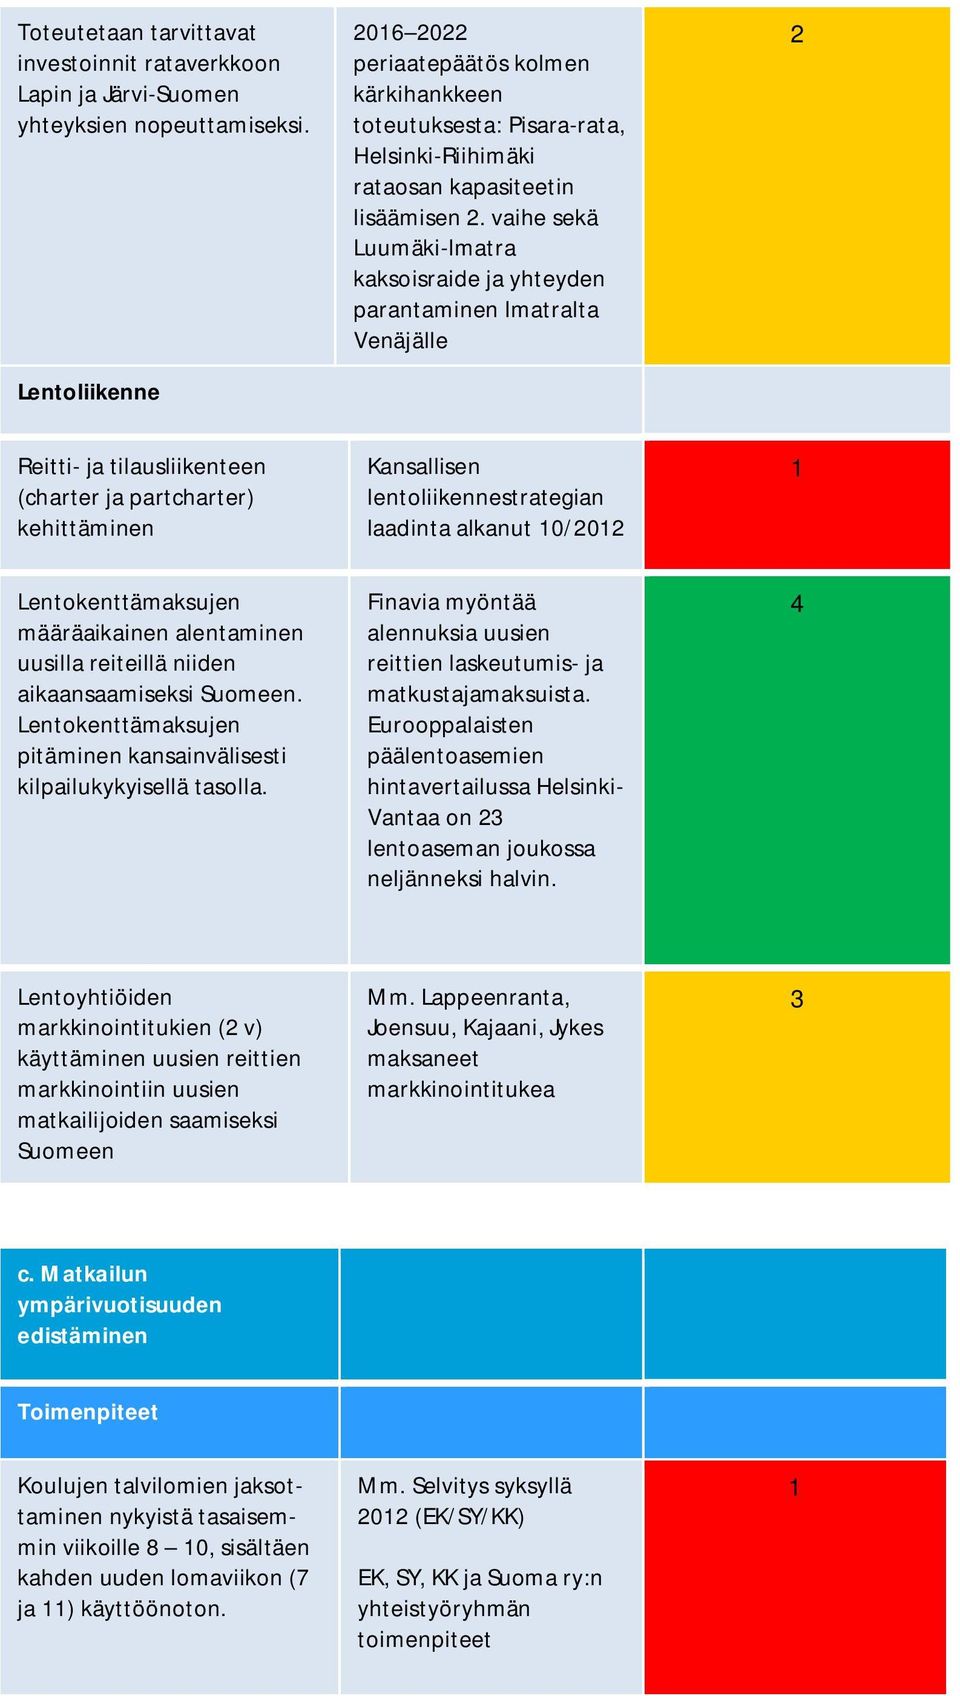 vaihe sekä Luumäki-Imatra kaksoisraide ja yhteyden parantaminen Imatralta Venäjälle 2 Reitti- ja tilausliikenteen (charter ja partcharter) kehittäminen Kansallisen lentoliikennestrategian laadinta